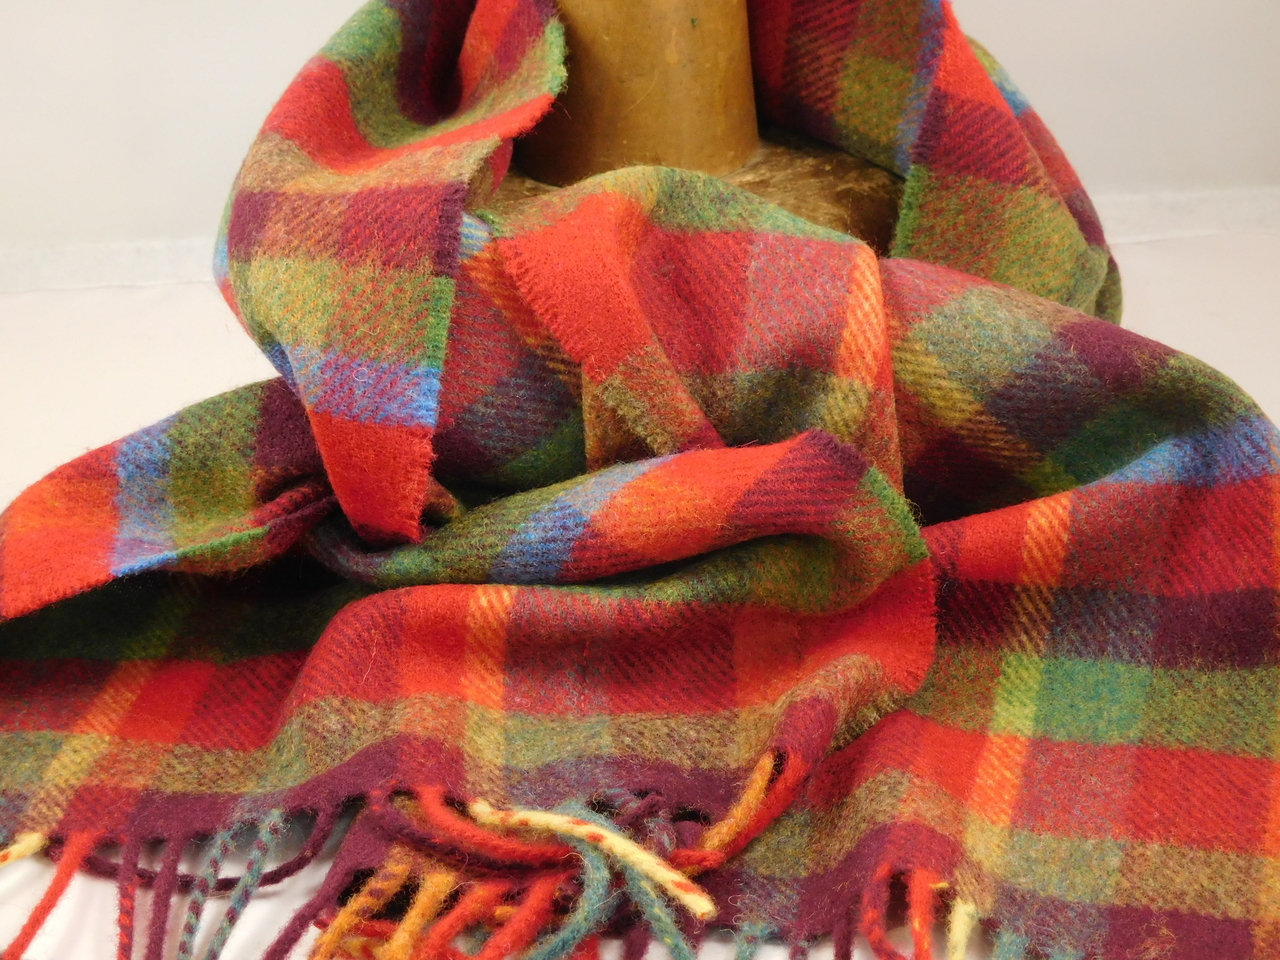 Irish Wool Scarf Short Red Royal Stewart Tartan - John Hanly & Co